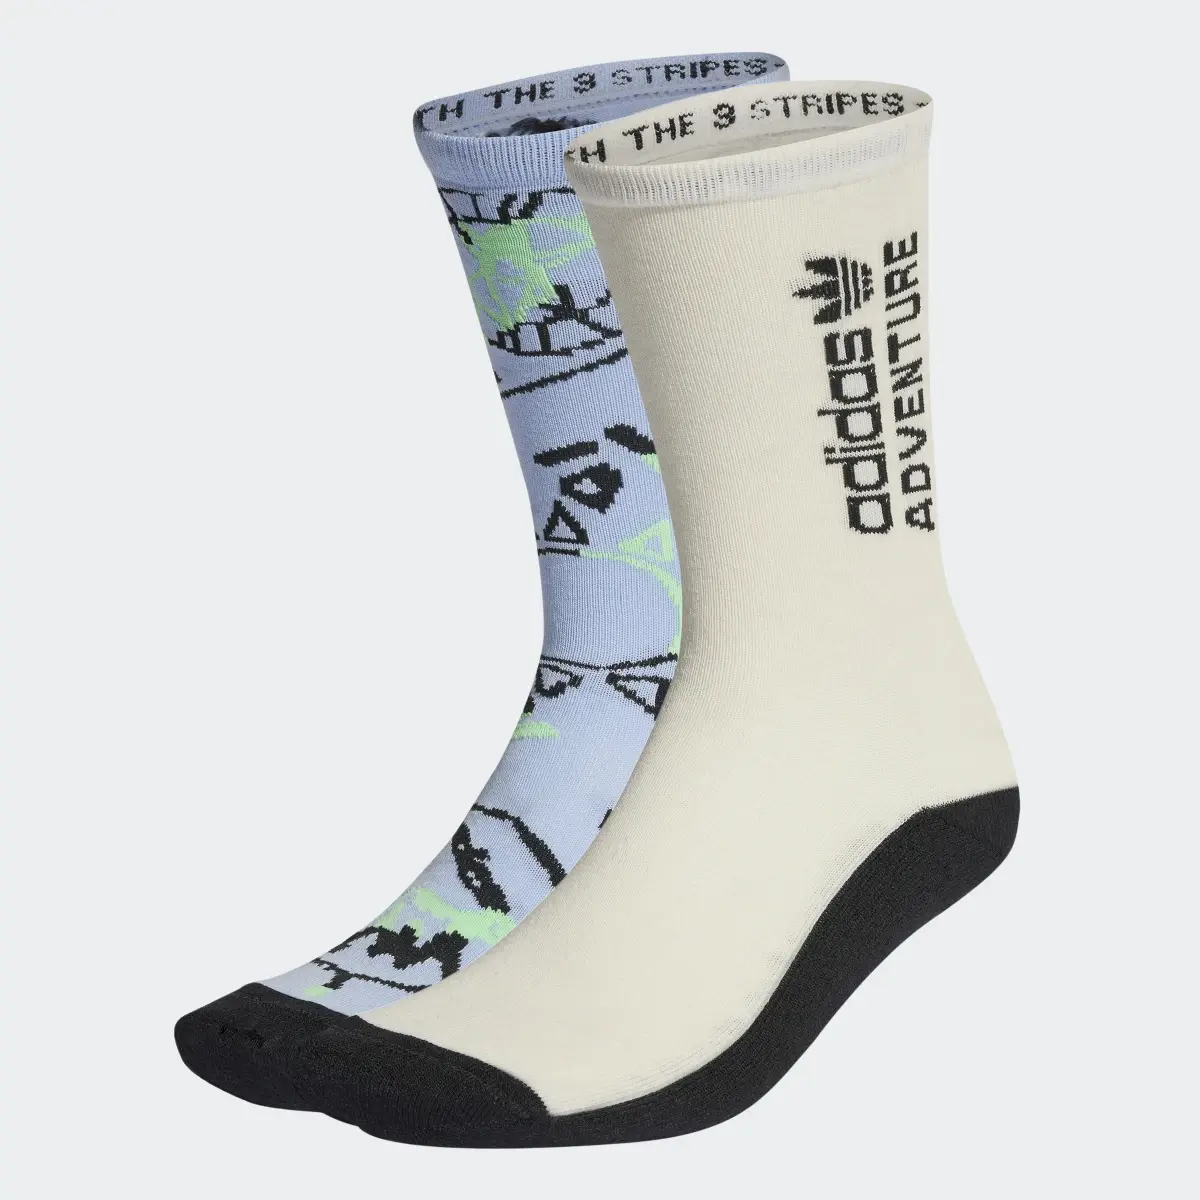 Adidas Adventure Socken, 2 Paar. 2